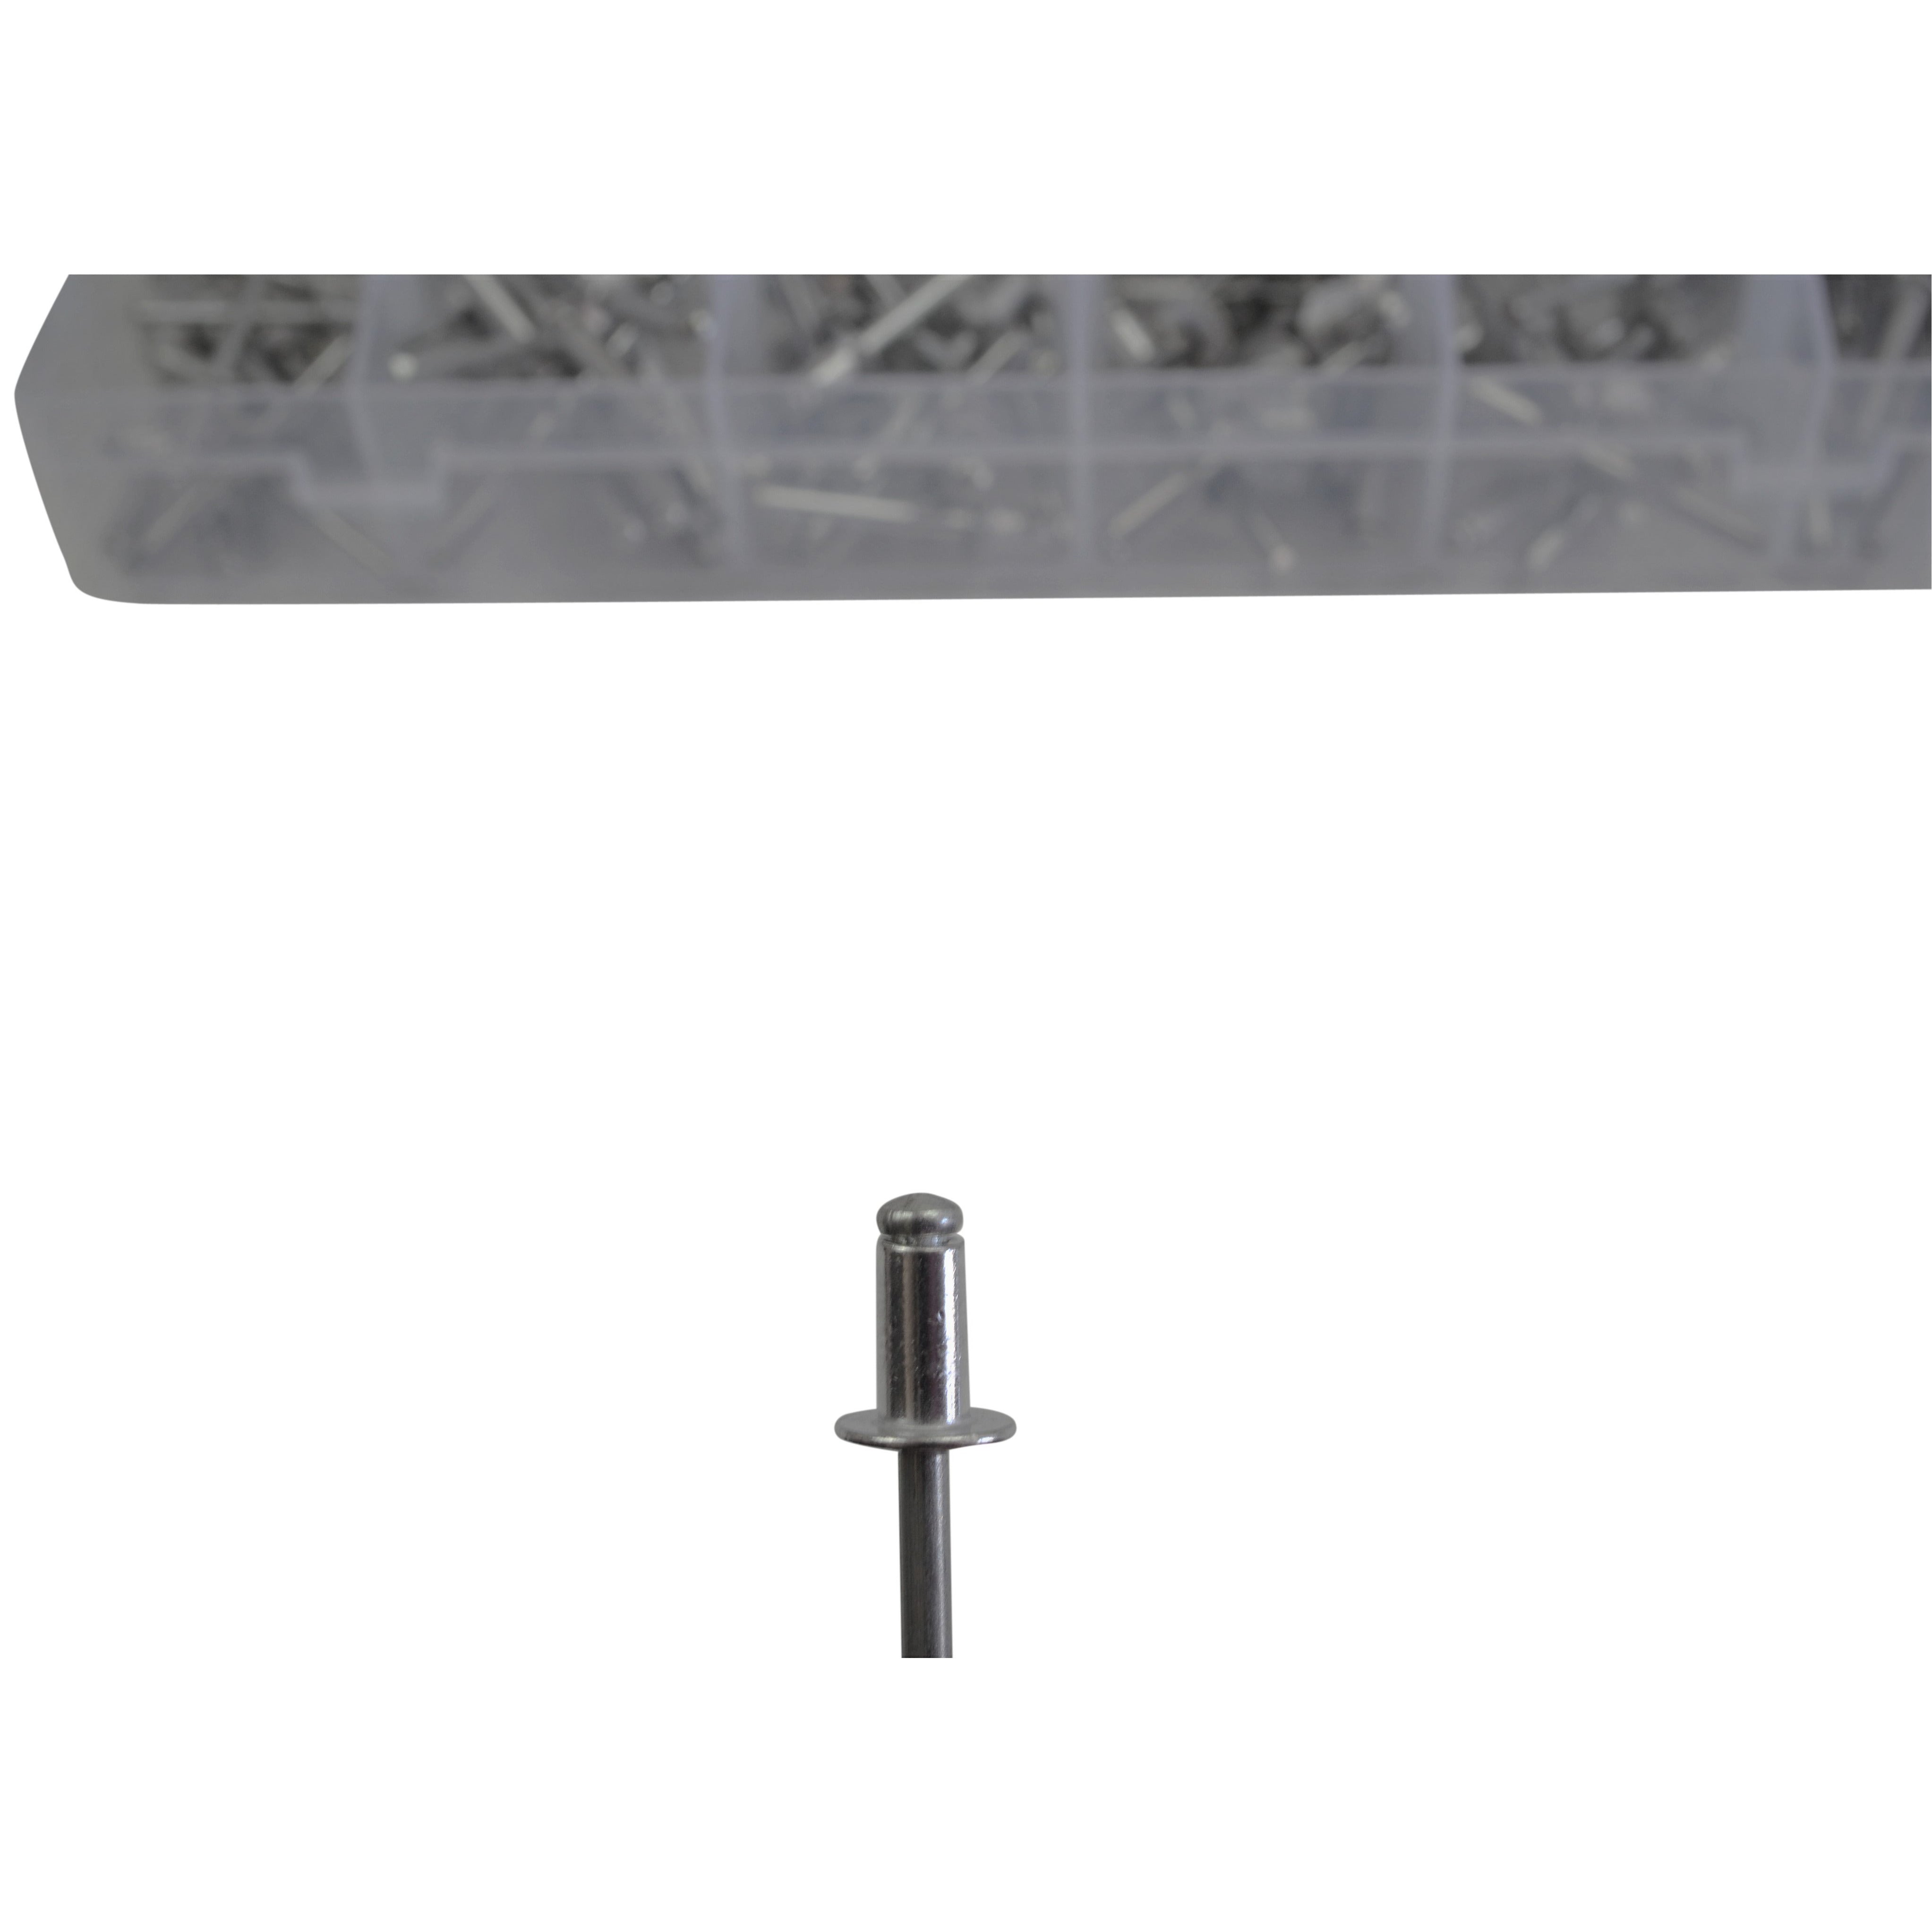 510 piece Aluminium Pop Rivet Grab Kit Assortment 6mm to 30mm stalk size  